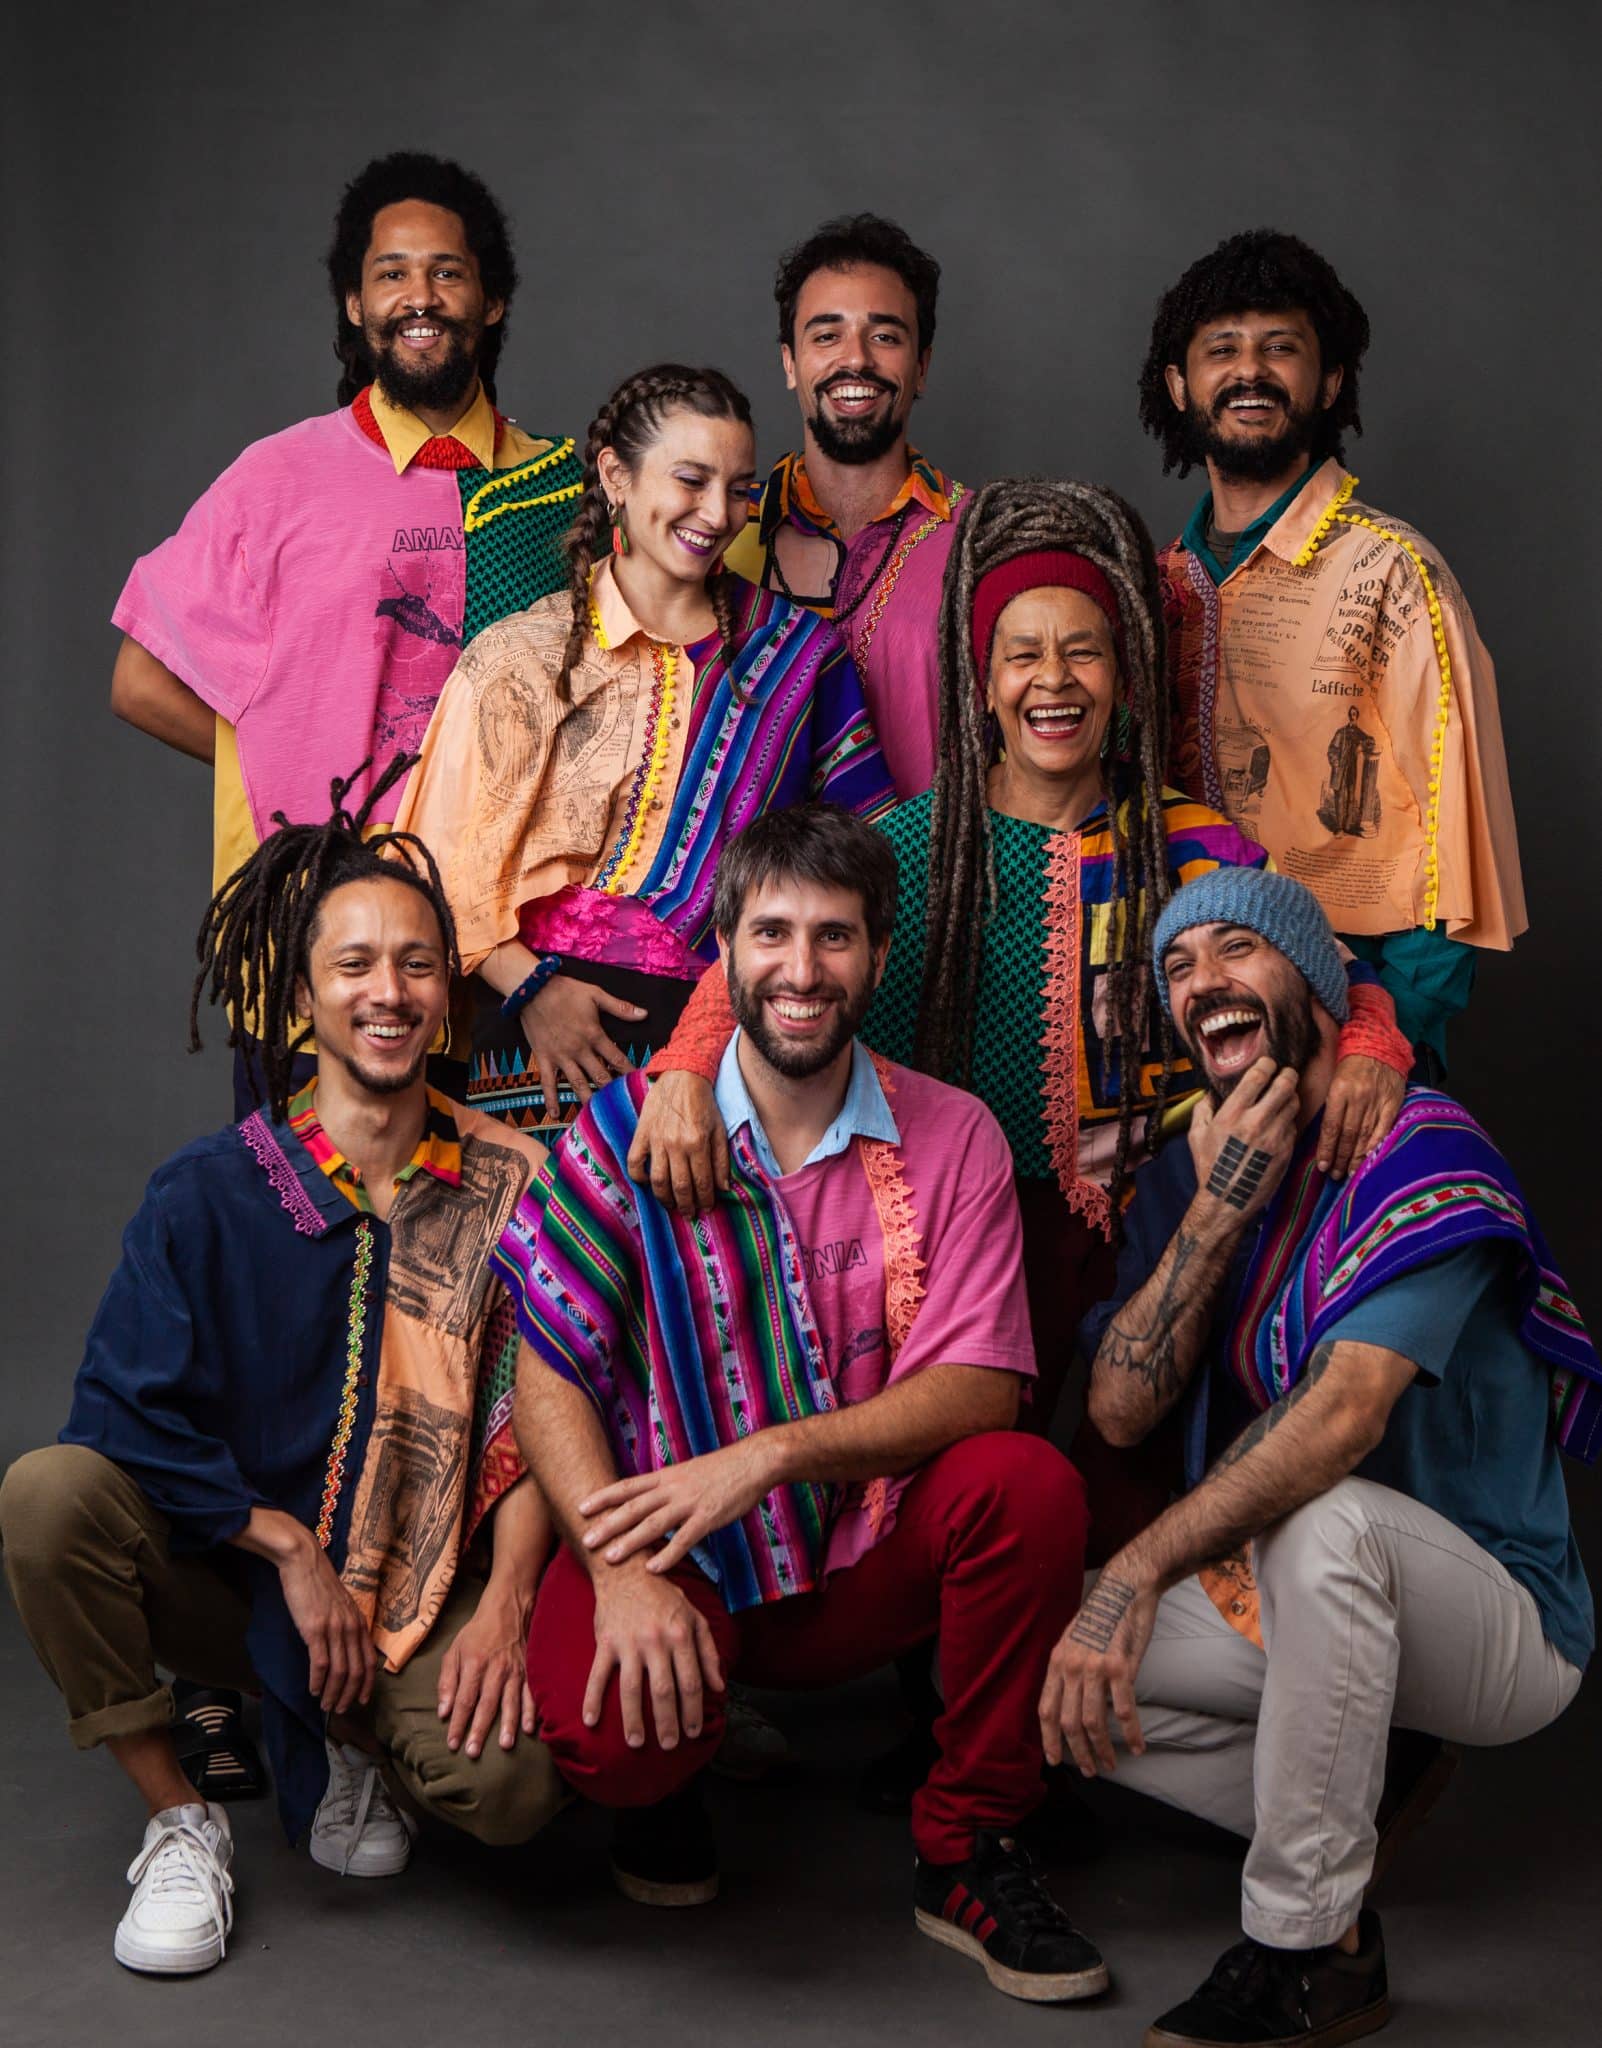 revistaprosaversoearte.com - Mano Unica lança o álbum 'Nascentes': uma odisseia sonora latino-americana